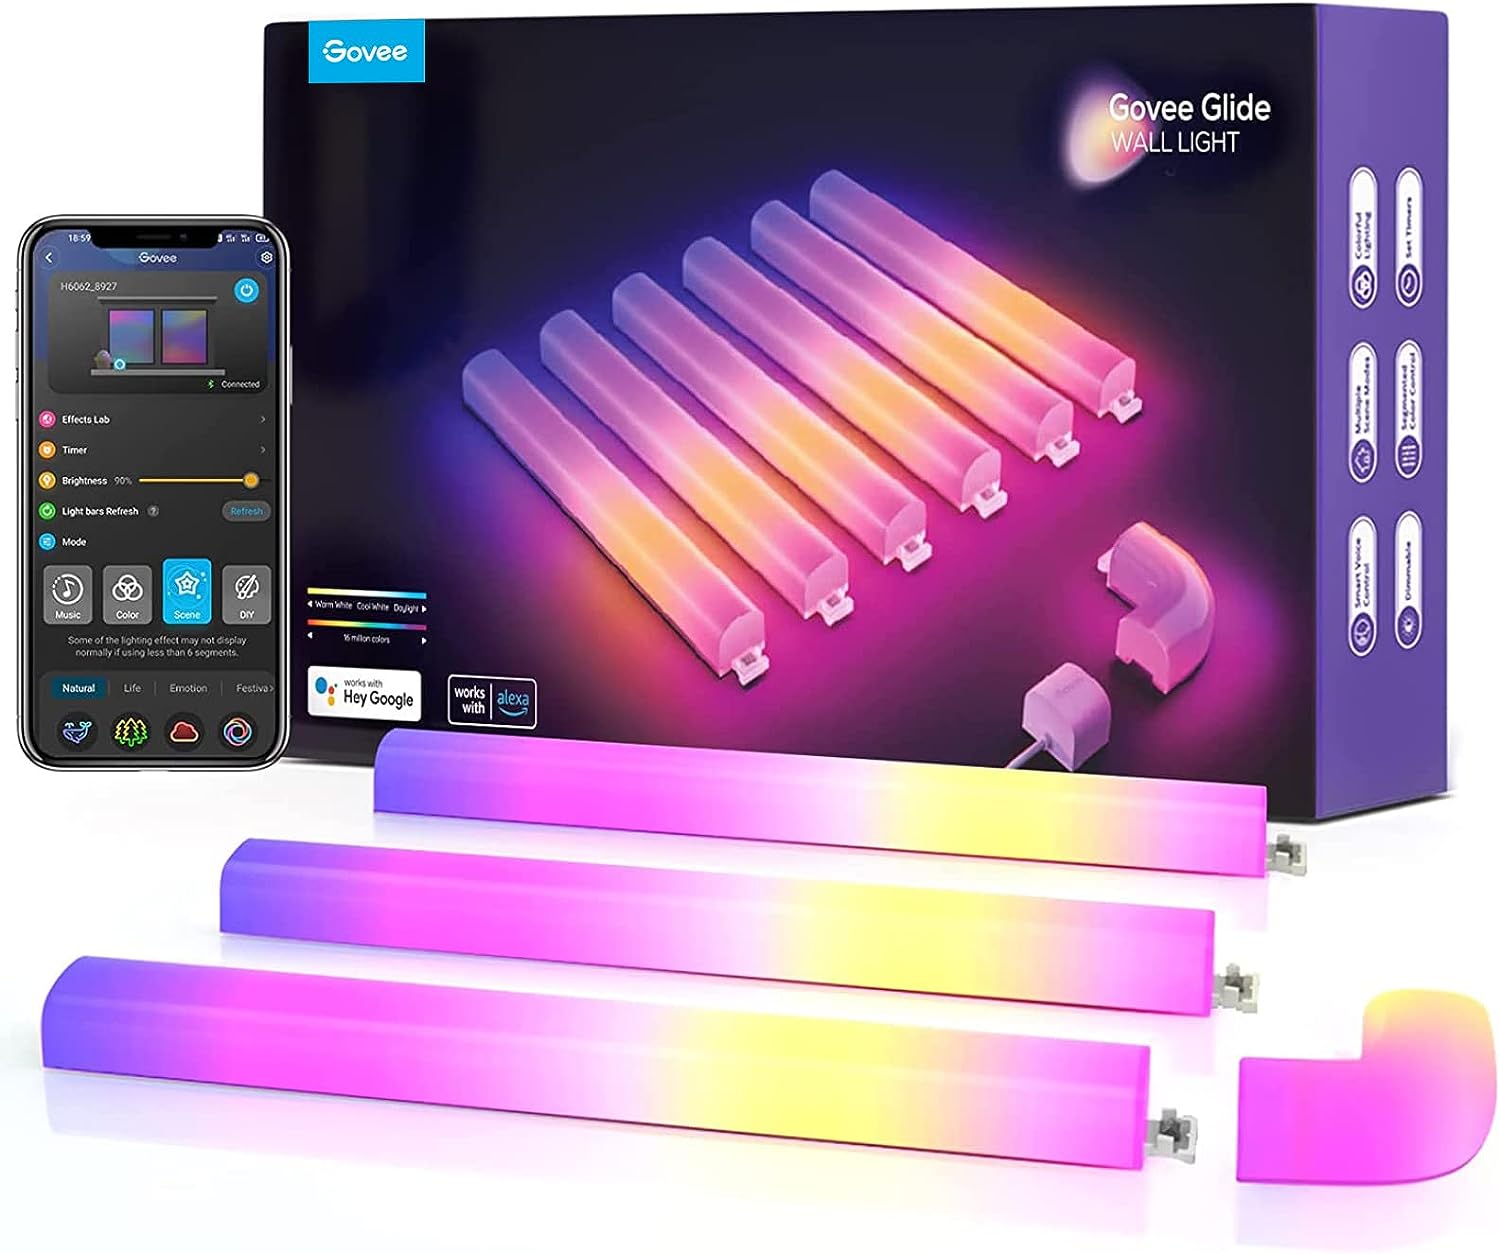 Govee Wandleuchte, Glide Wall Light, WiFi RGBIC LED Lightbar für Gaming, Musik-Sync Mehrfarben, funktioniert mit Alexa und Google Assistant, mit über 40 dynamische Szenen, 6 Stück und 1 Ecke